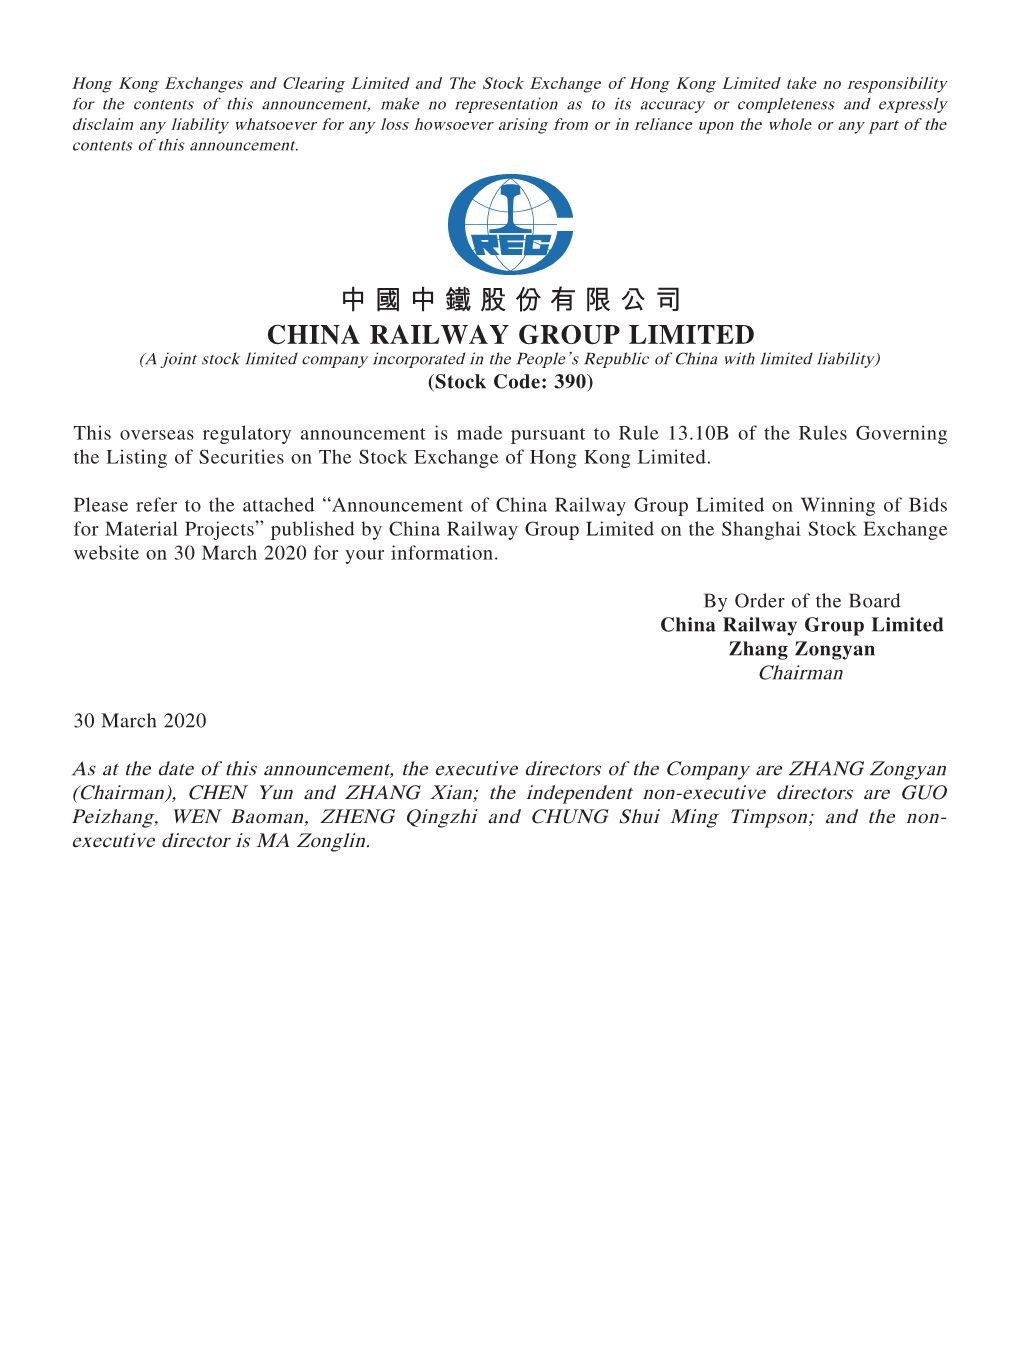 中國中鐵股份有限公司 CHINA RAILWAY GROUP LIMITED (A Joint Stock Limited Company Incorporated in the People’S Republic of China with Limited Liability) (Stock Code: 390)